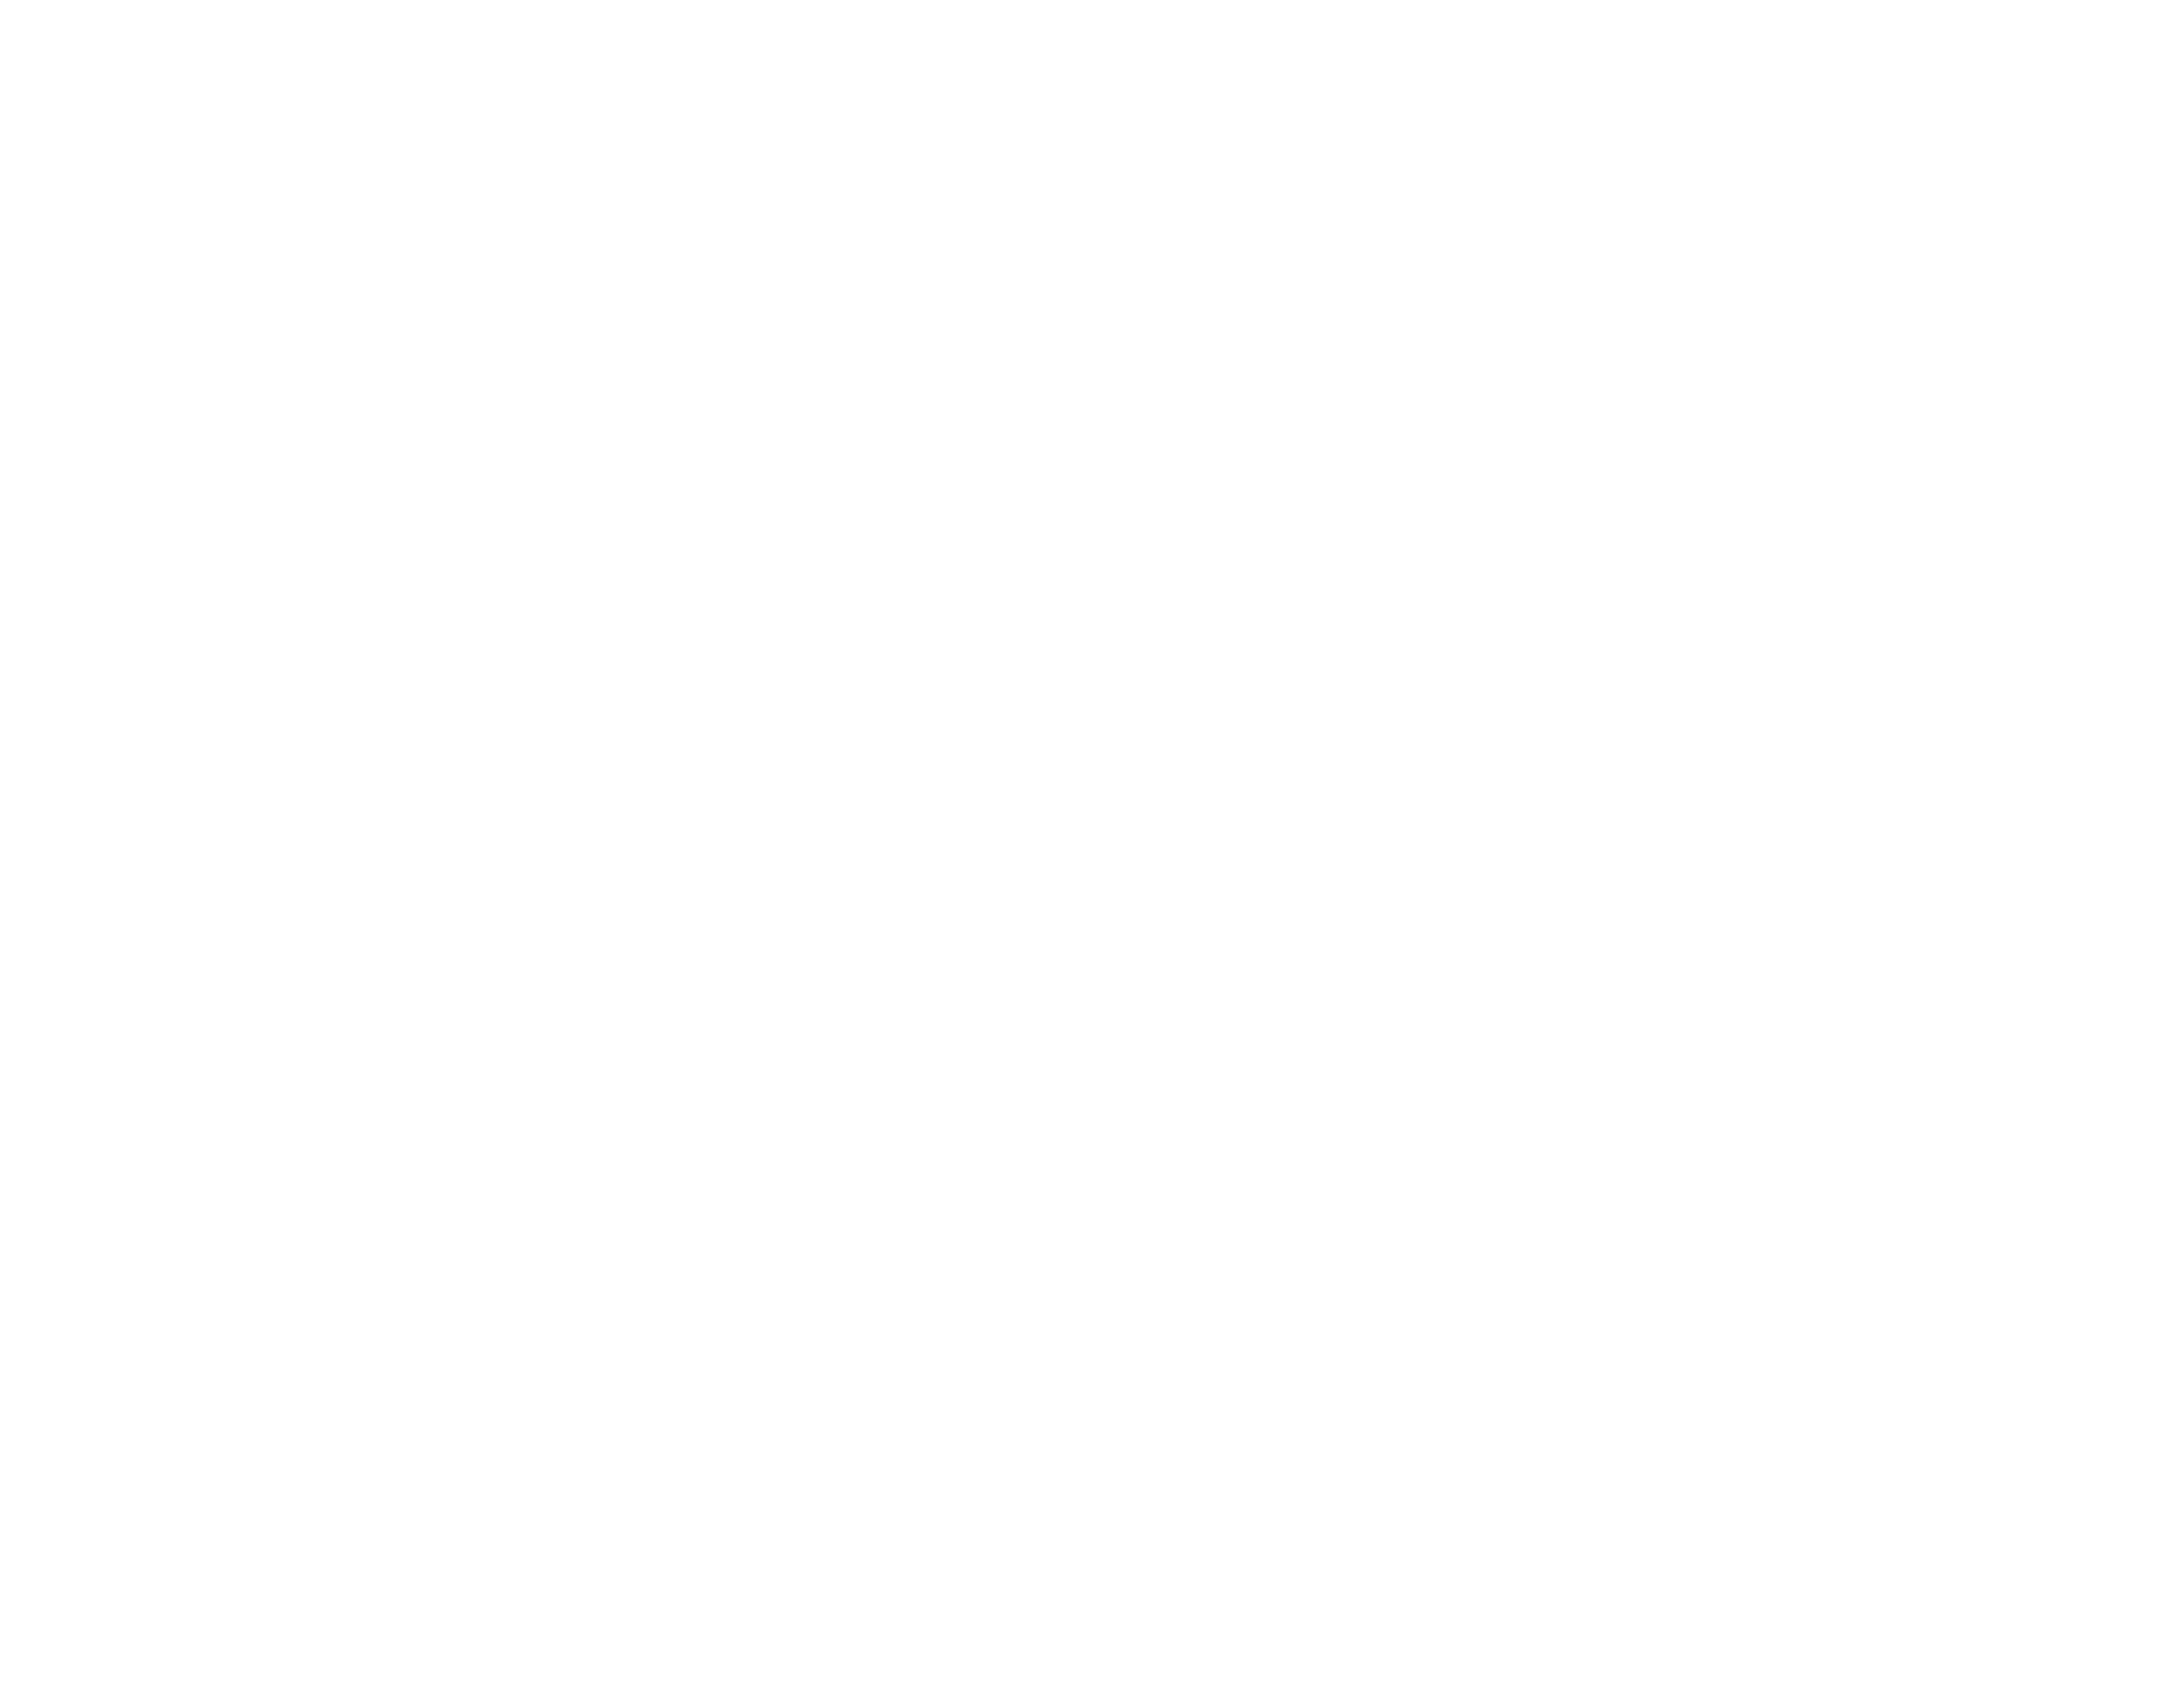 Fruition Logo